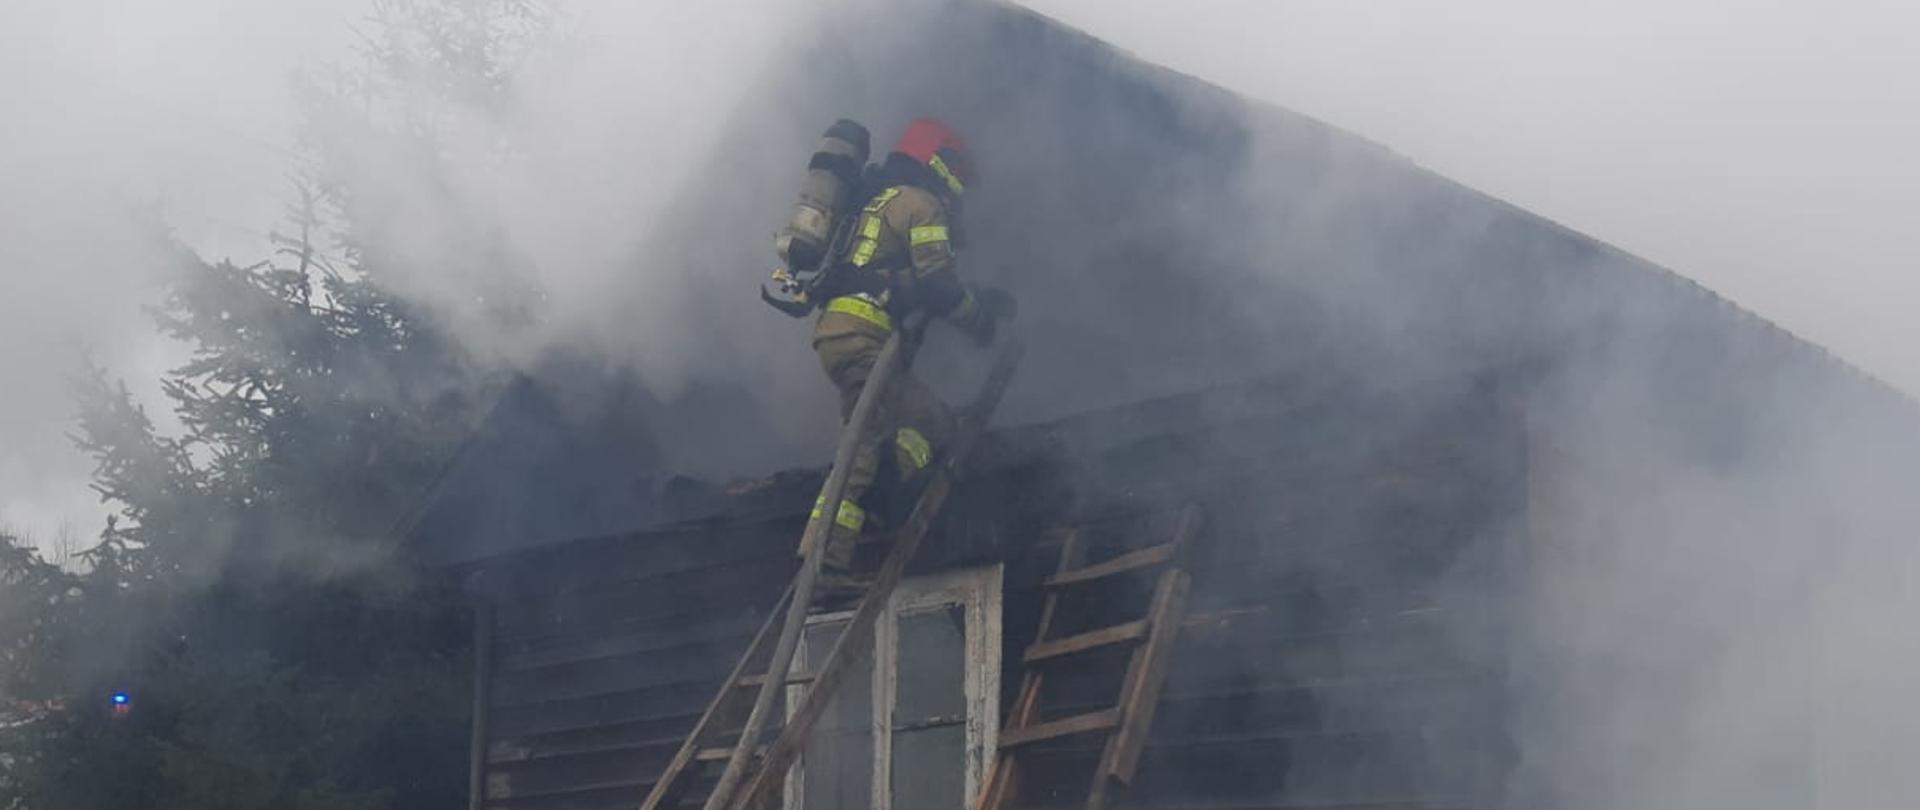 pożar domu drewnianego w Gminie Garbatka Letnisko, strażak na drabinie gasi pożar poddasza asekurowany przez drugiego strażaka